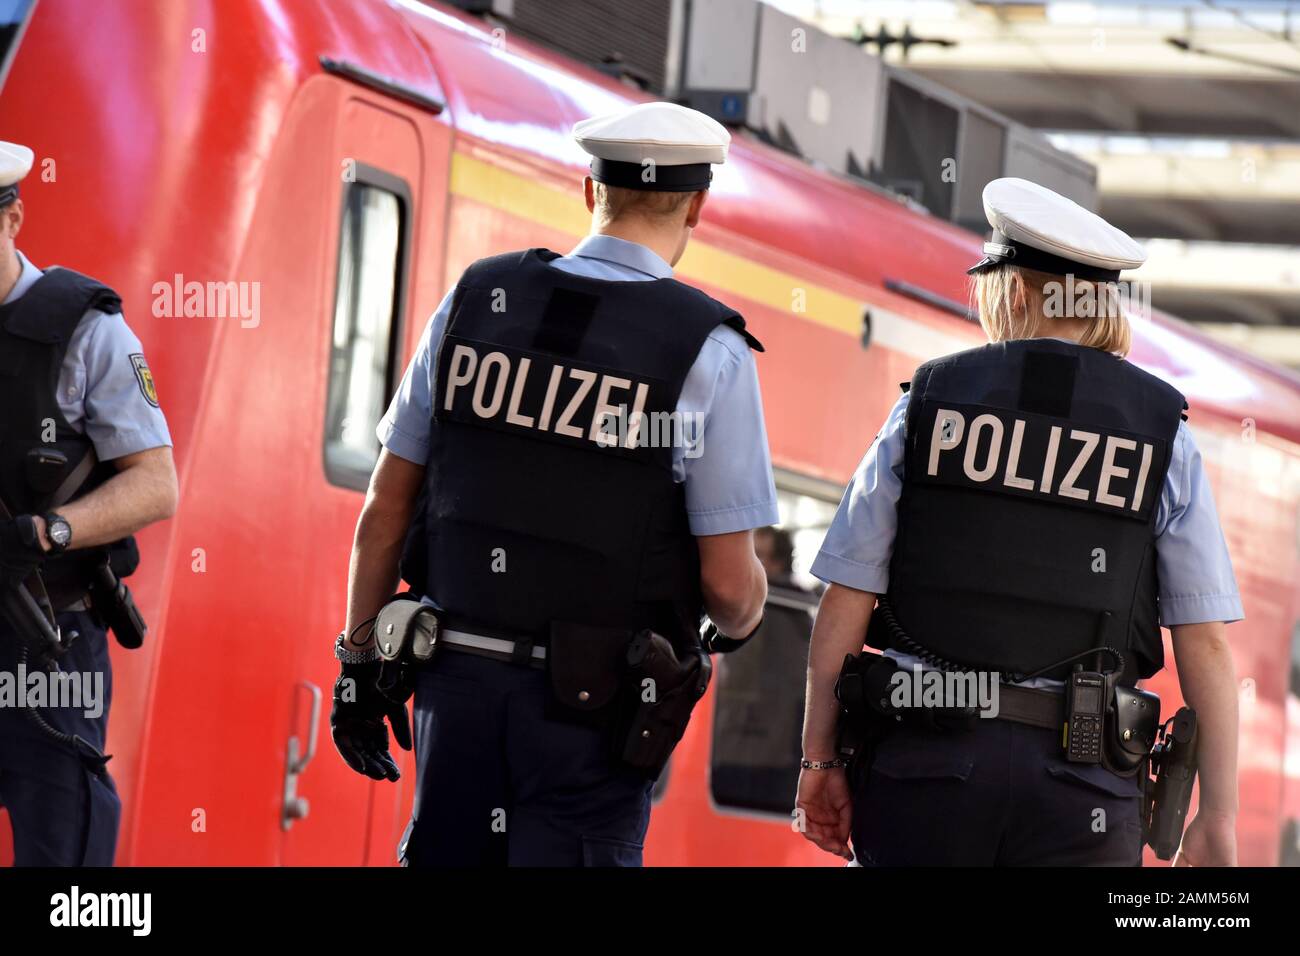 Après les attentats terroristes de Paris, la police fédérale a intensifié son déploiement à la gare centrale de Munich. Les policiers portent maintenant des gilets de sécurité spéciaux et portent parfois des pistolets à machine. [traduction automatique] Banque D'Images